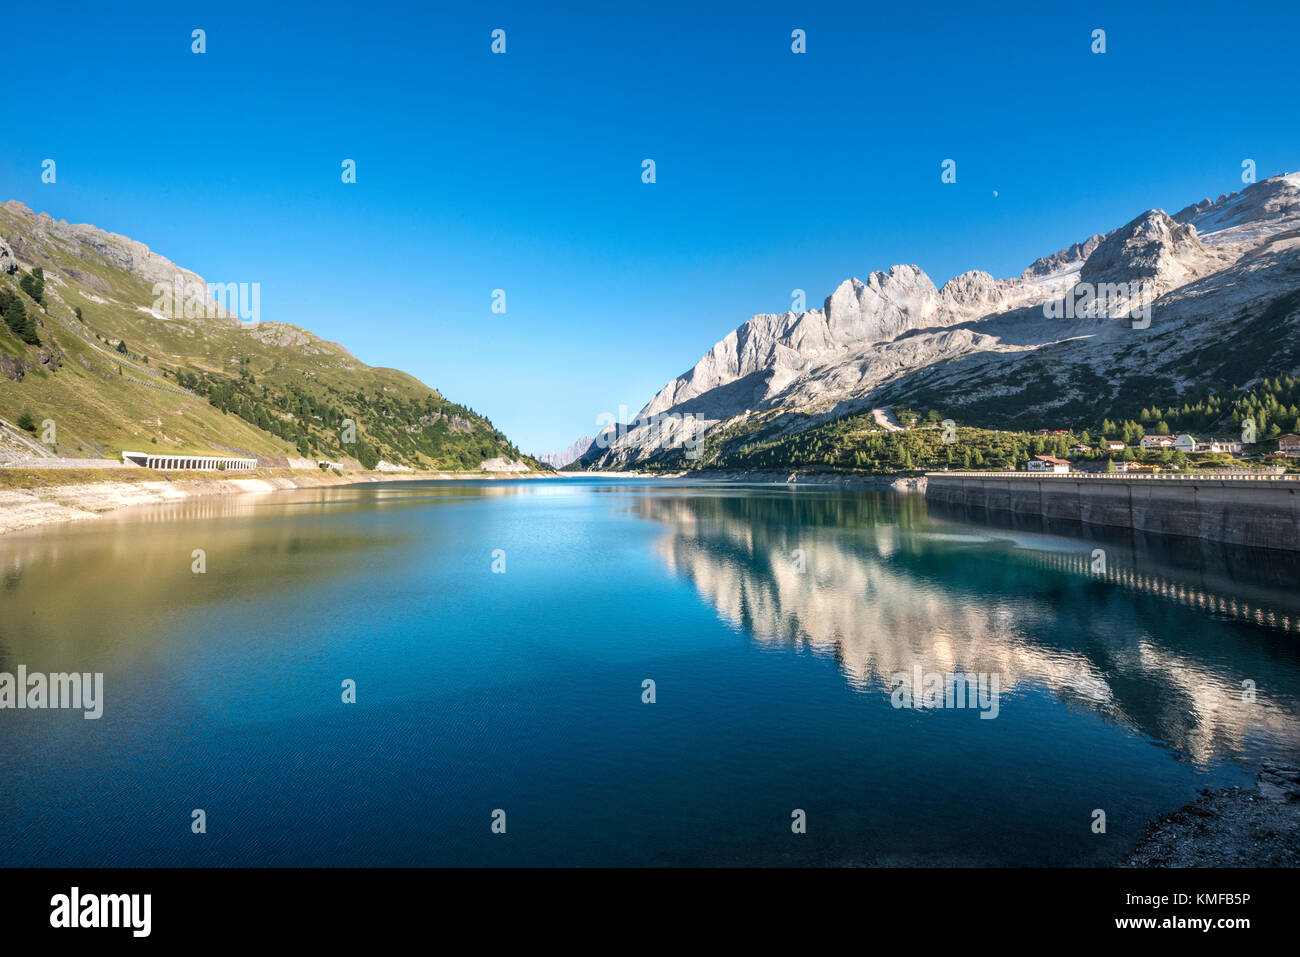 Fedaia-Stausee, Lake Fedaia, links Marmolada, Dolomiten, Südtirol, Trentino-Alto Adige, Italien Stock Photo